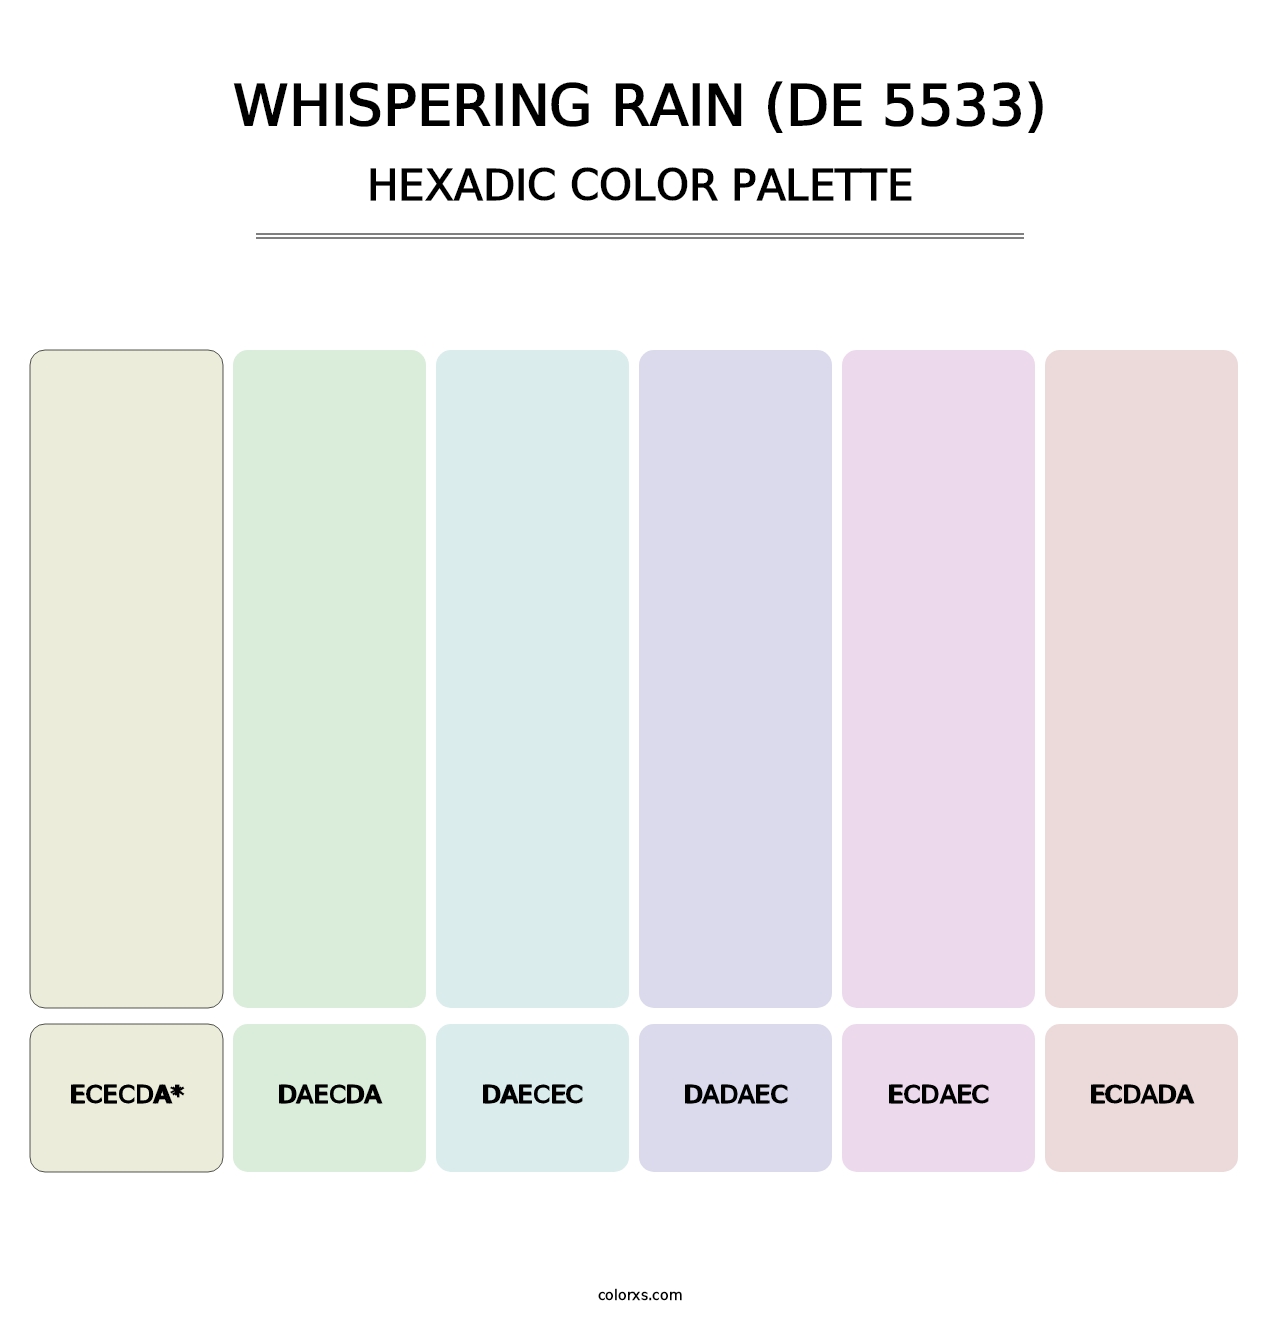 Whispering Rain (DE 5533) - Hexadic Color Palette